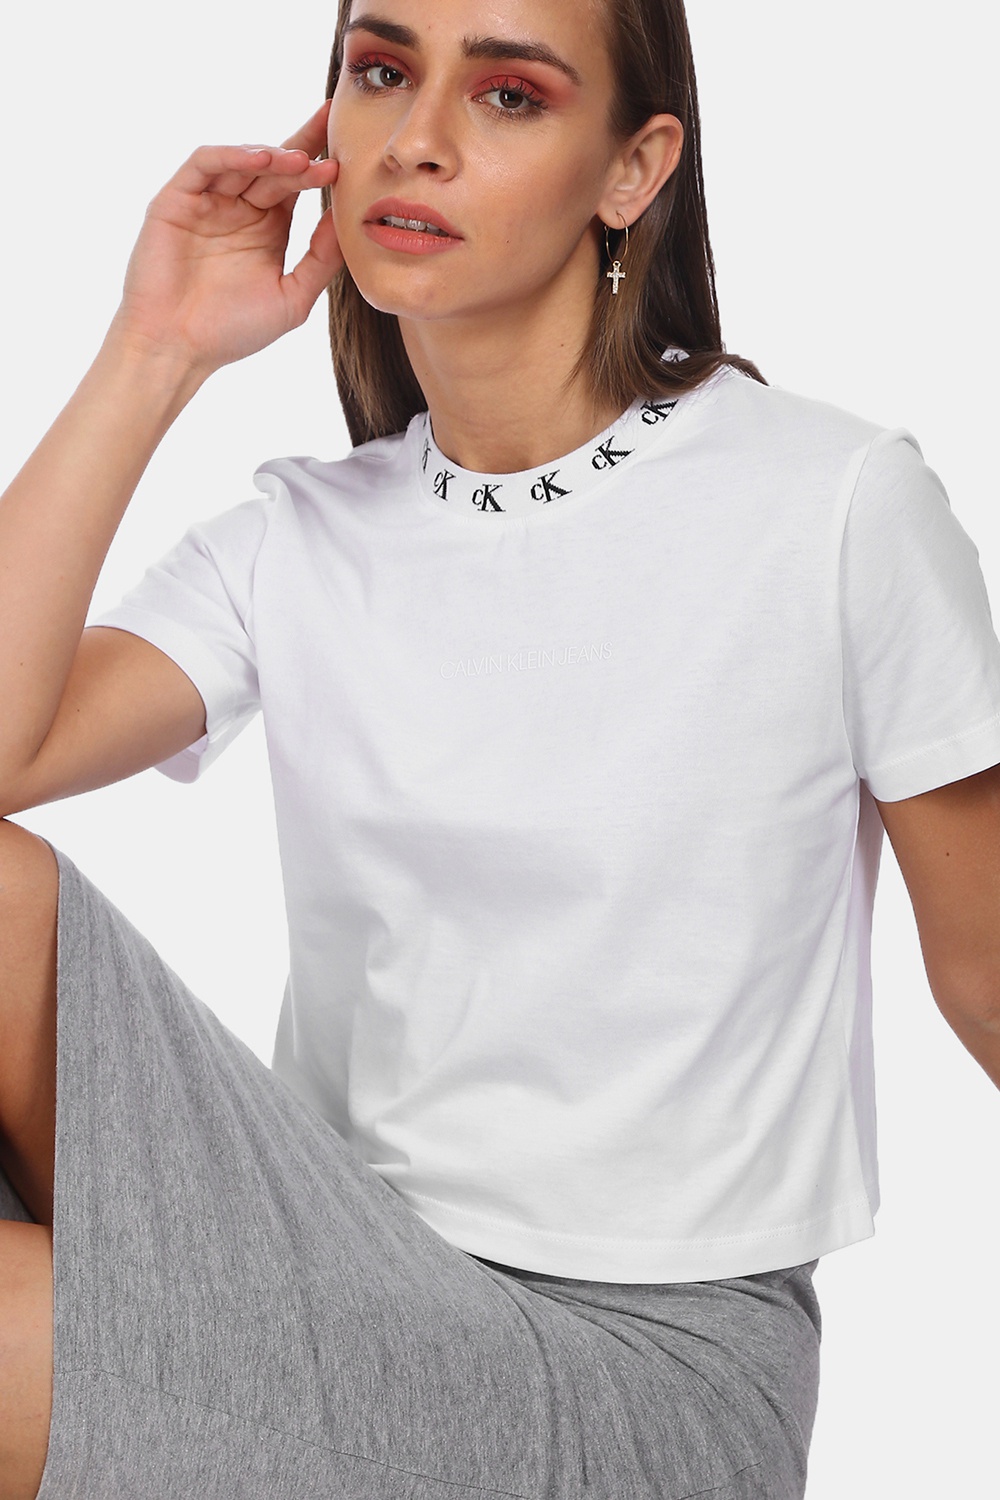 Calvin Klein Women's T-Shirt